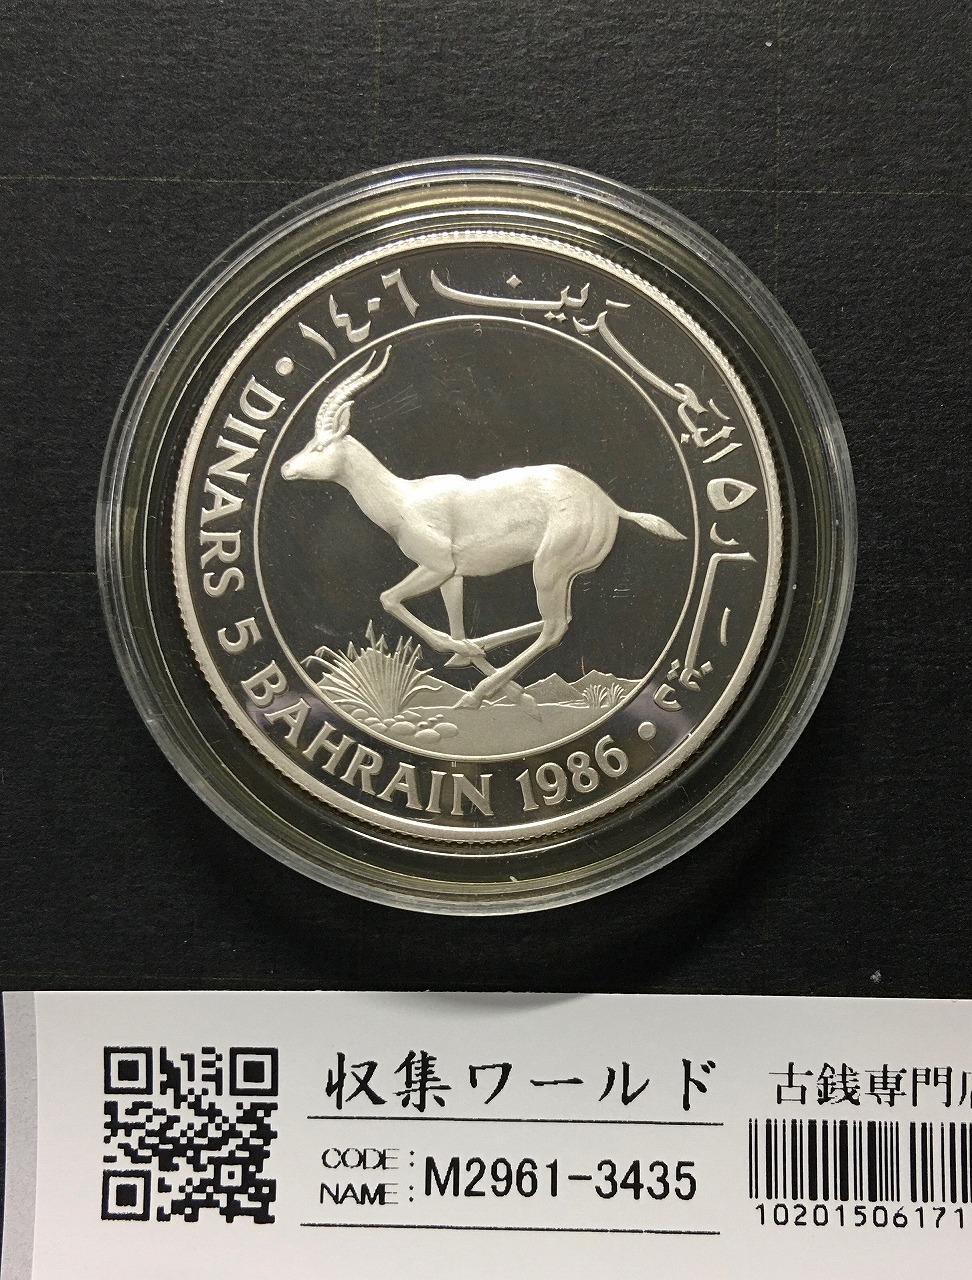 世界自然保護基金設立25周年記念 バーレーン 5Dプルーフ銀貨 1986年 未使用